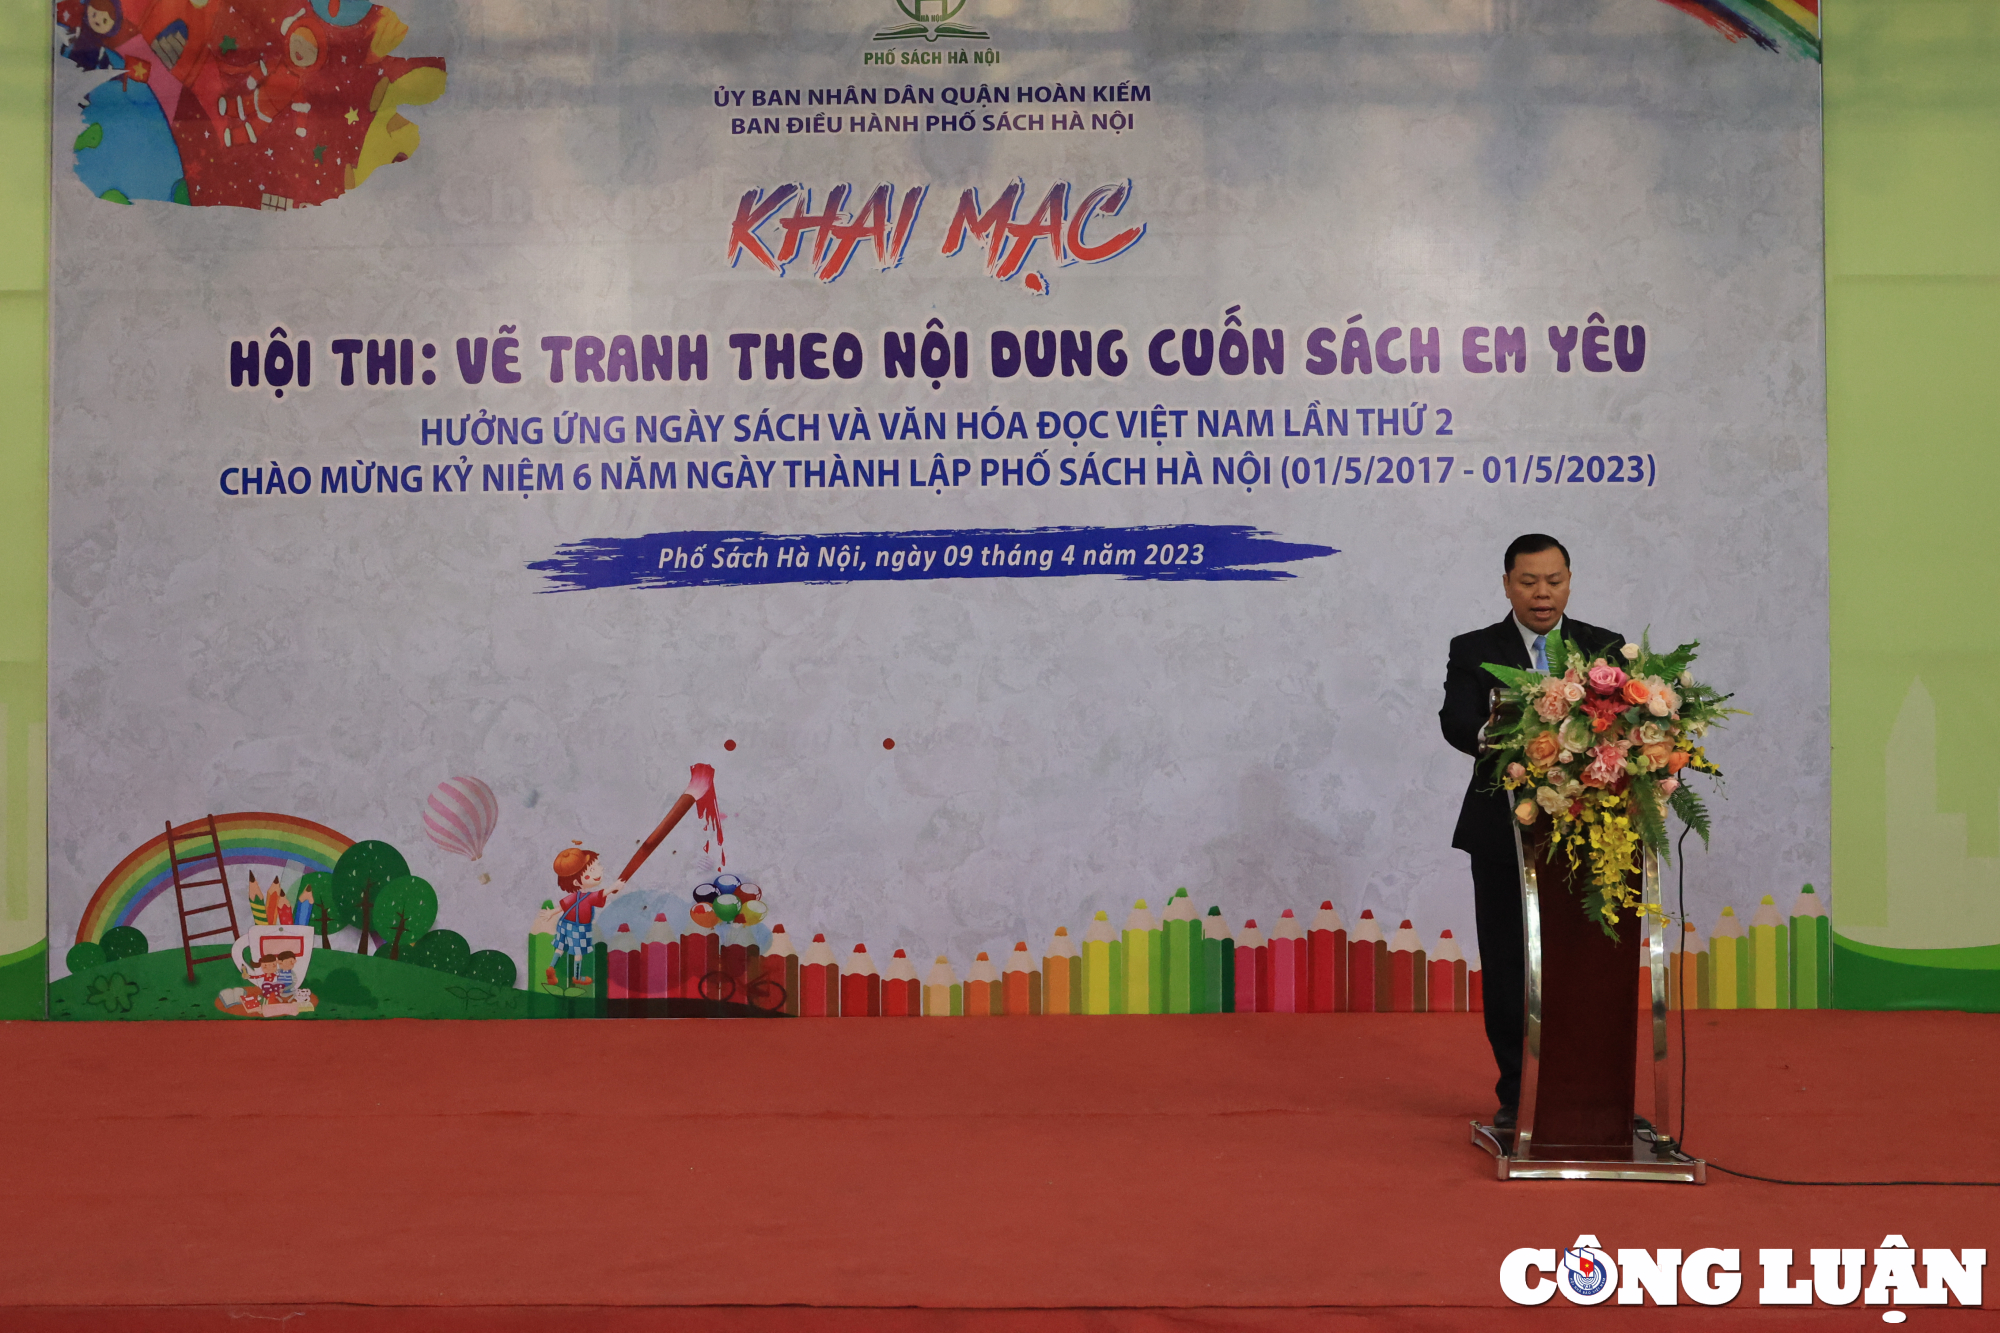 Ông Nguyễn Văn Anh - Phó giám đốc Trung tâm Văn hóa Thông tin và Thể thao Quận Hoàn Kiếm phát biểu khai mạc hội thi.